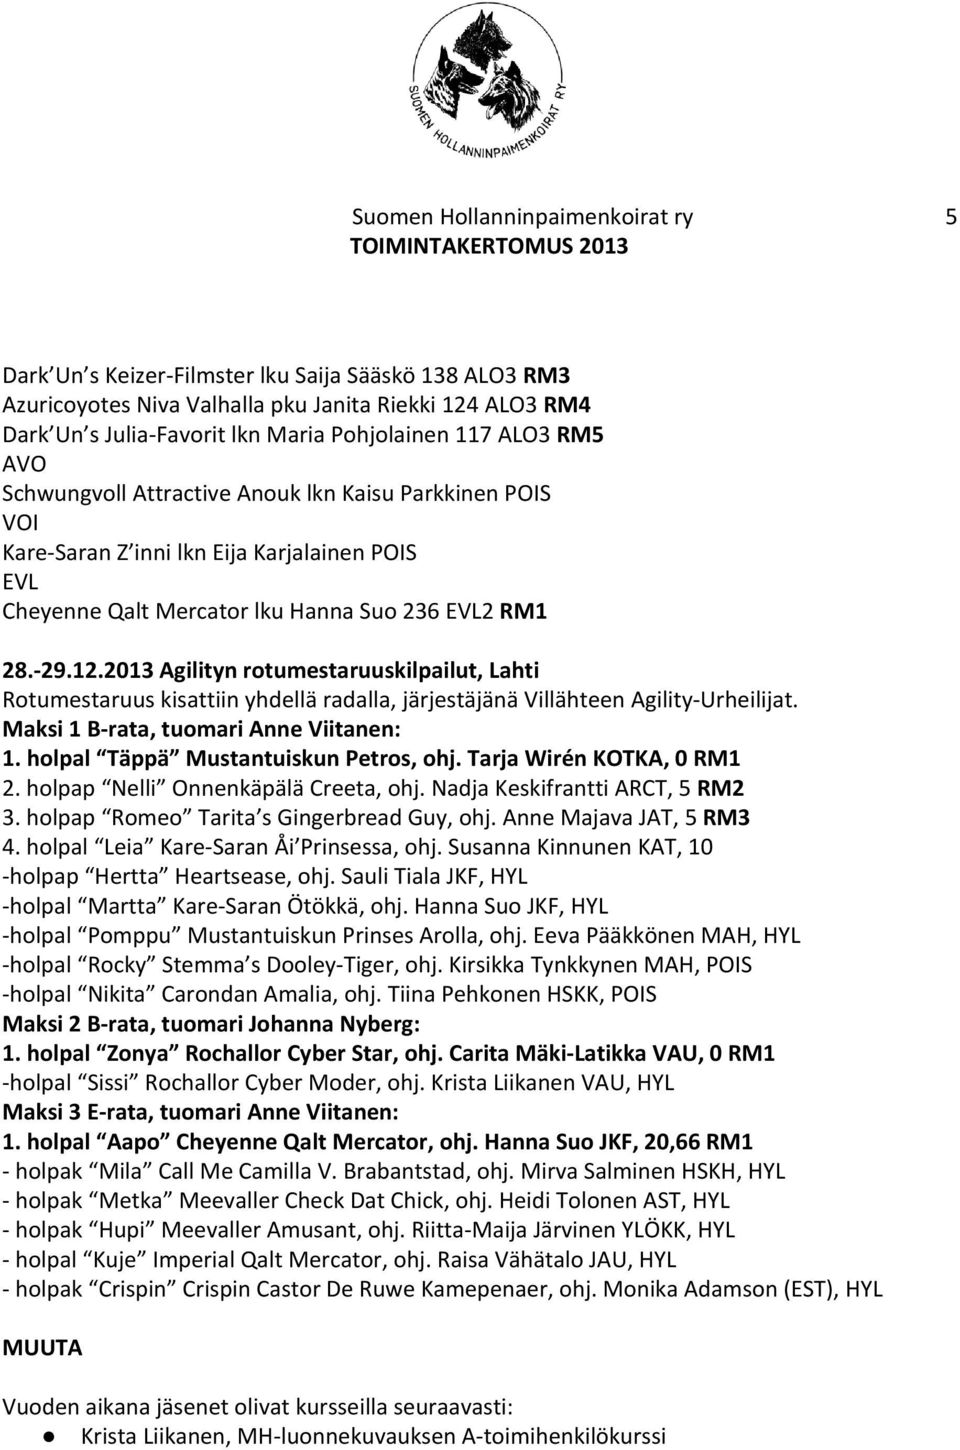 2013 Agilityn rotumestaruuskilpailut, Lahti Rotumestaruus kisattiin yhdellä radalla, järjestäjänä Villähteen Agility-Urheilijat. Maksi 1 B-rata, tuomari Anne Viitanen: 1.